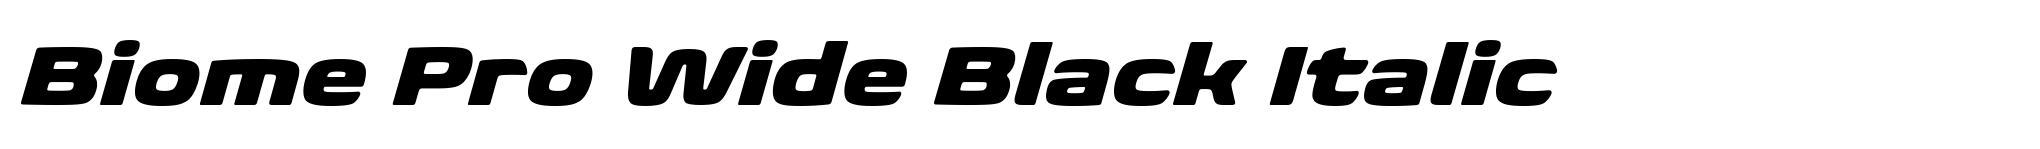 Biome Pro Wide Black Italic image